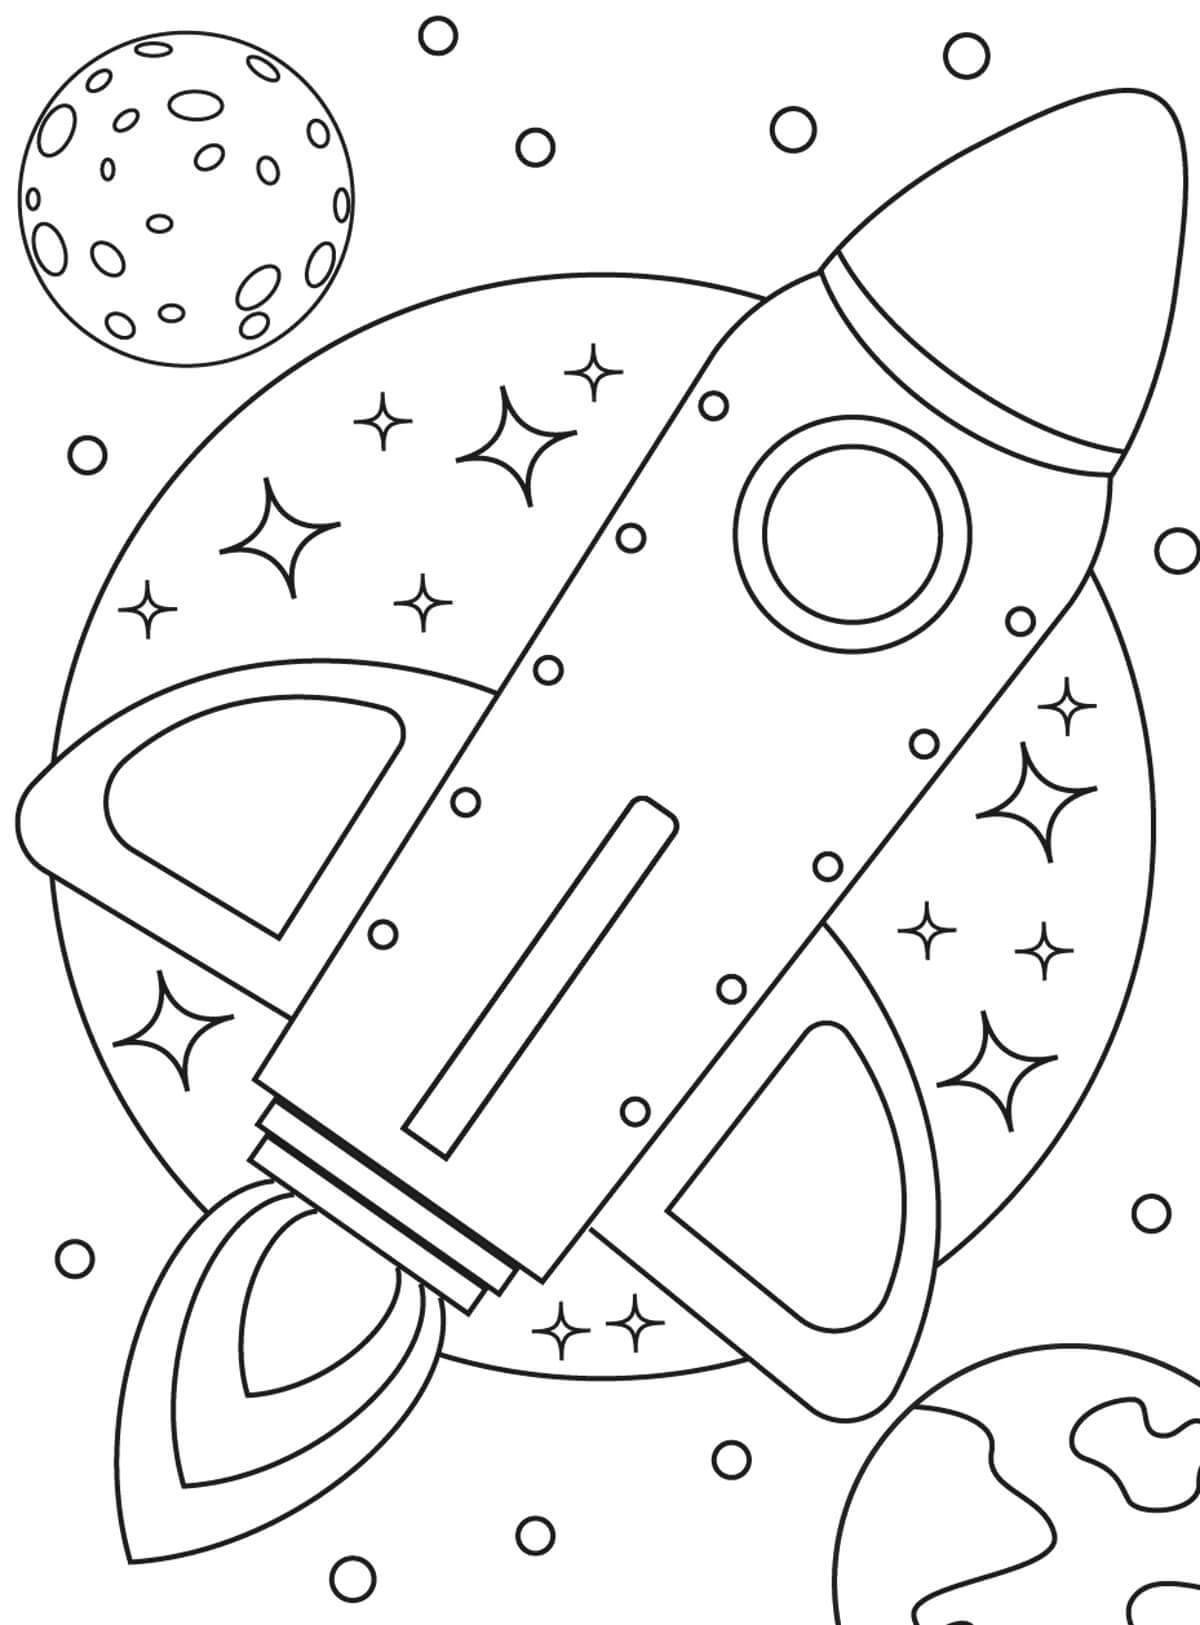 Раскраска космос для детей 4 5. Космос раскраска для детей. Космос раскраска для детей 4 лет. Раскраска. В космосе. Детские раскраски космос.